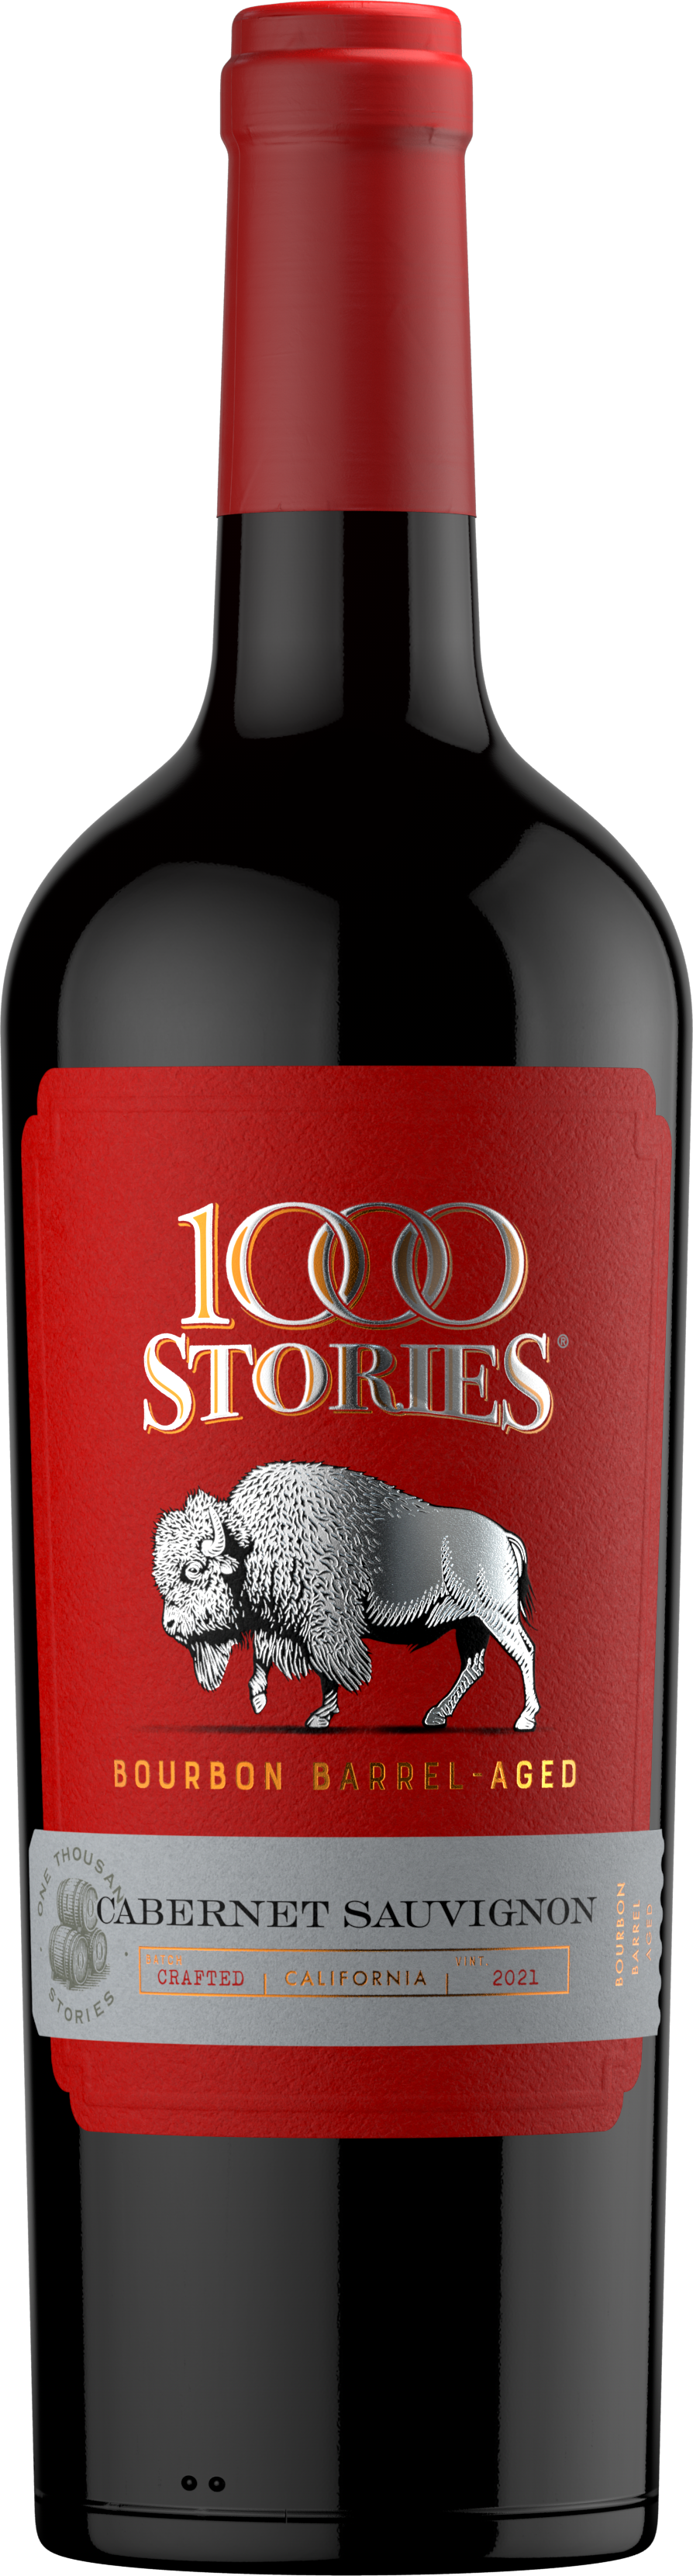 1000 Stories Cabernet Sauvignon 2021